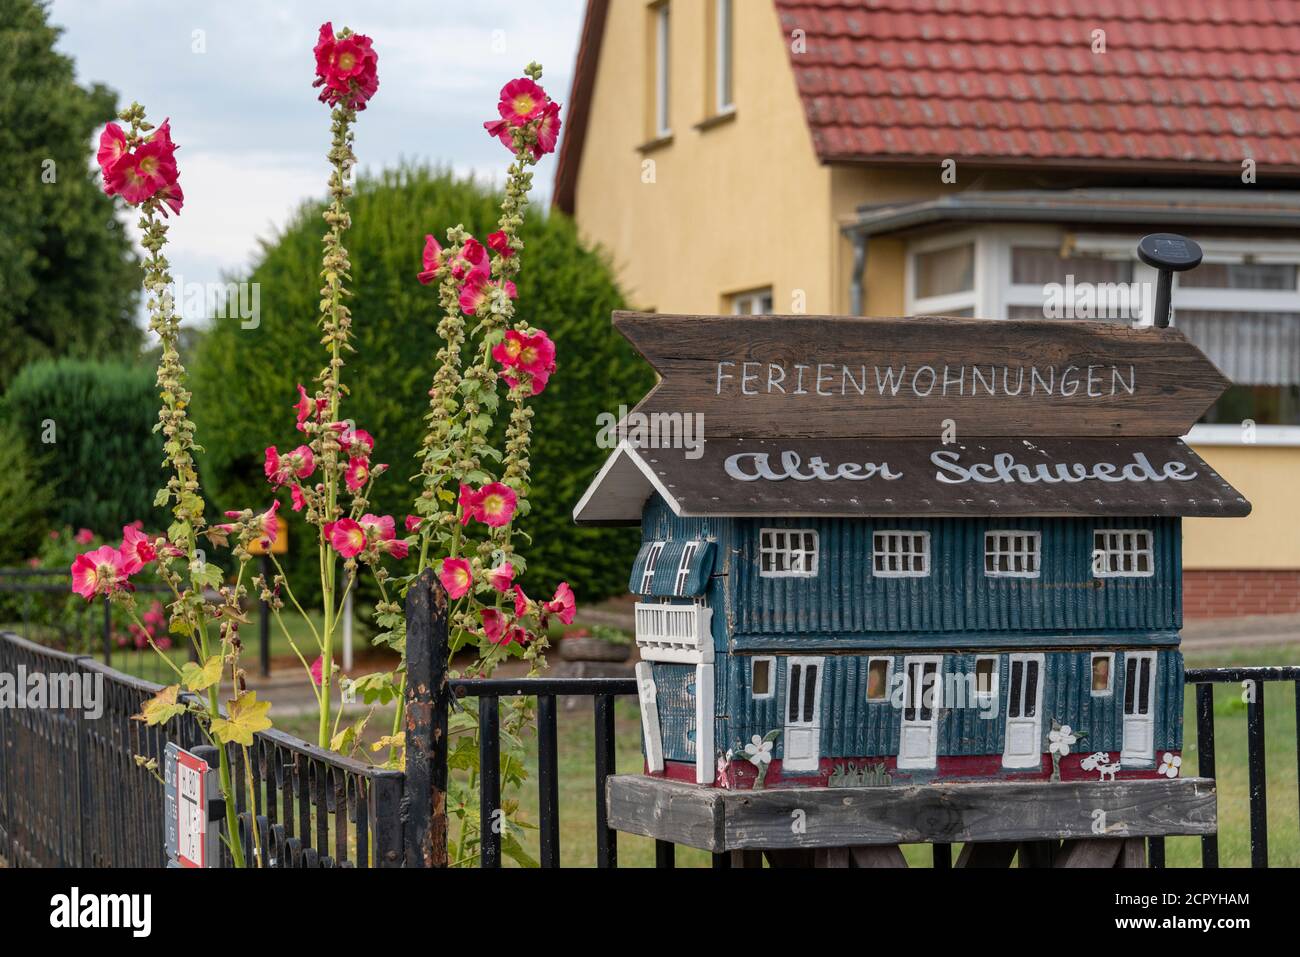 Deutschland, Mecklenburg-Vorpommern, Seebad Sellin, Kreis Seedorf, eine Malwee blüht neben einem Holzhaus mit der Aufschrift 'Ferienwohnungen Stockfoto